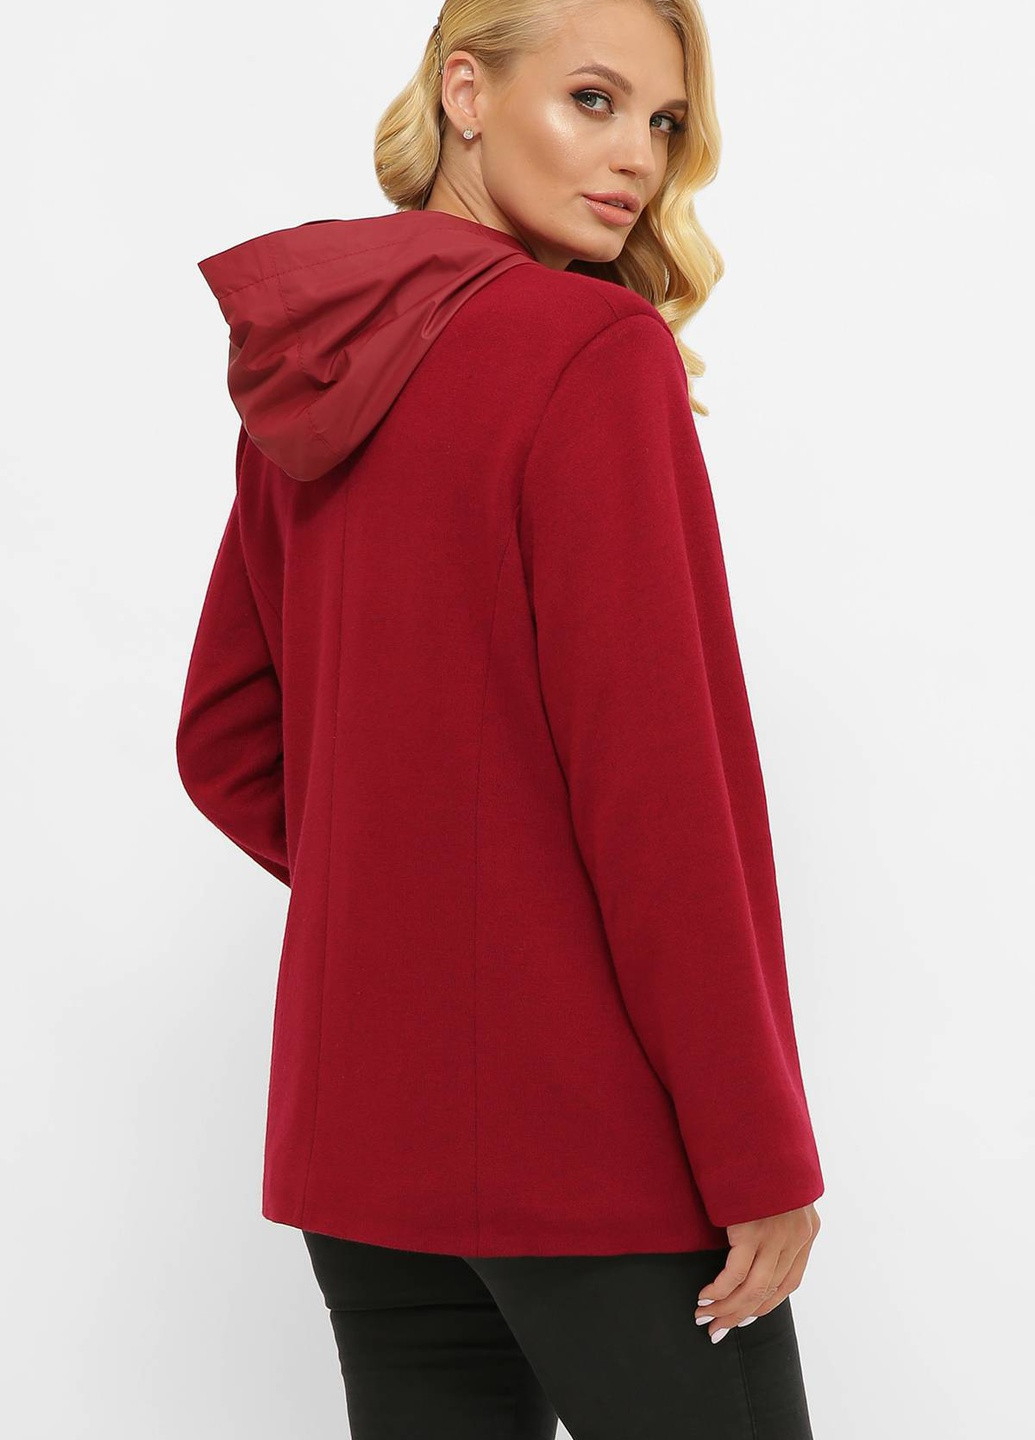 Червона зимня легка куртка з ангори санті червона Tatiana